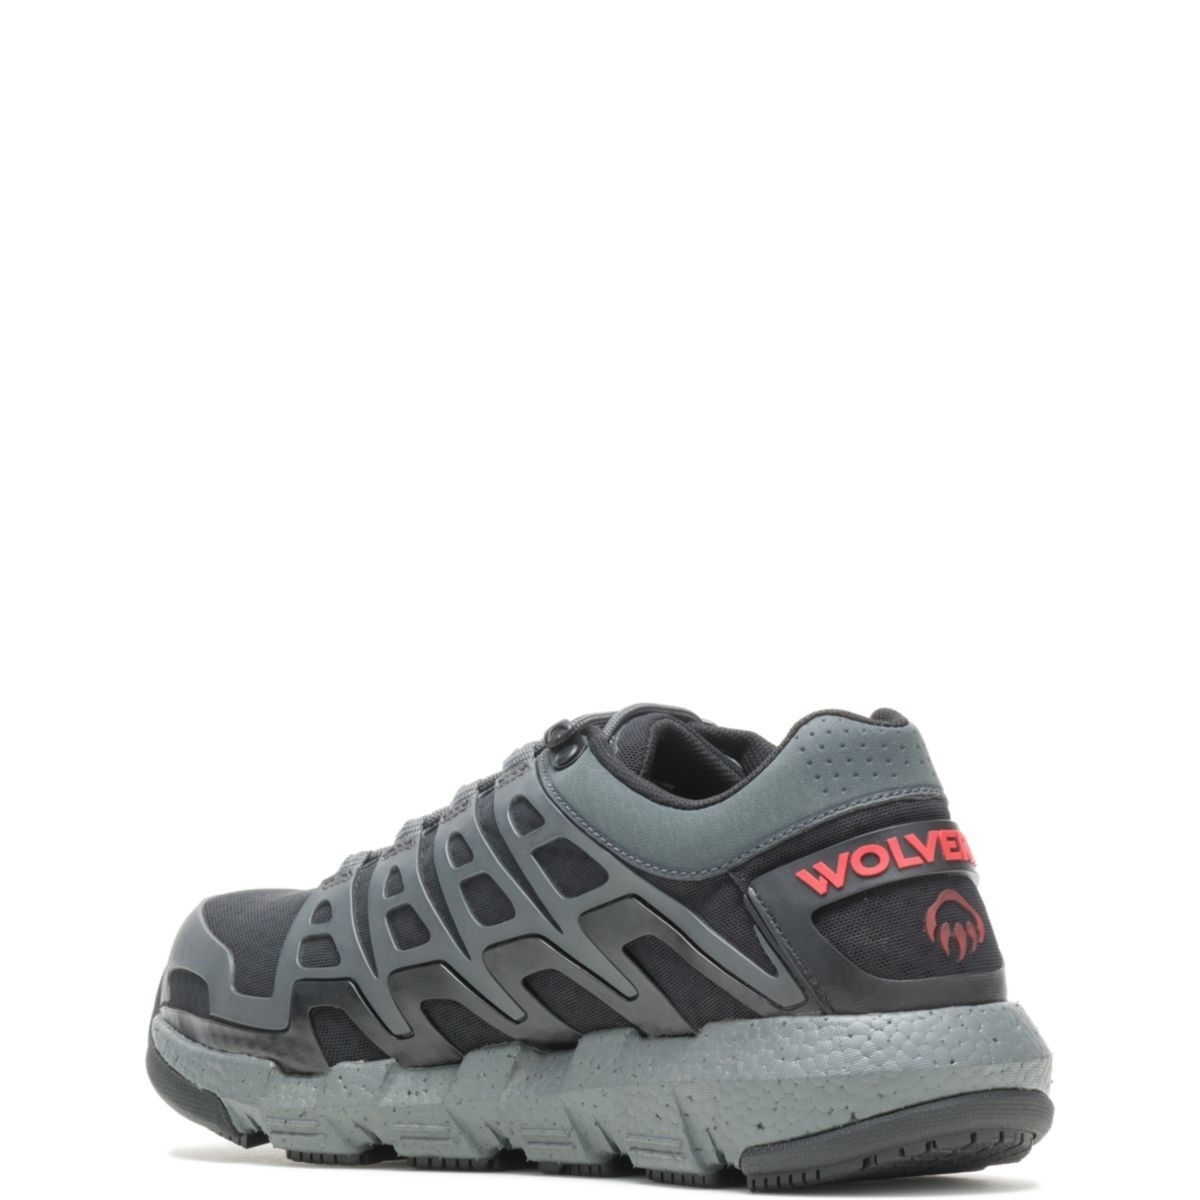 WOLVERINE Men's Rev Vent UltraSpringâ¢ DuraShocksÂ® CarbonMAXÂ® Composite Toe Work Shoe Charcoal - W211016 CHARCOAL - CHARCOAL, 11